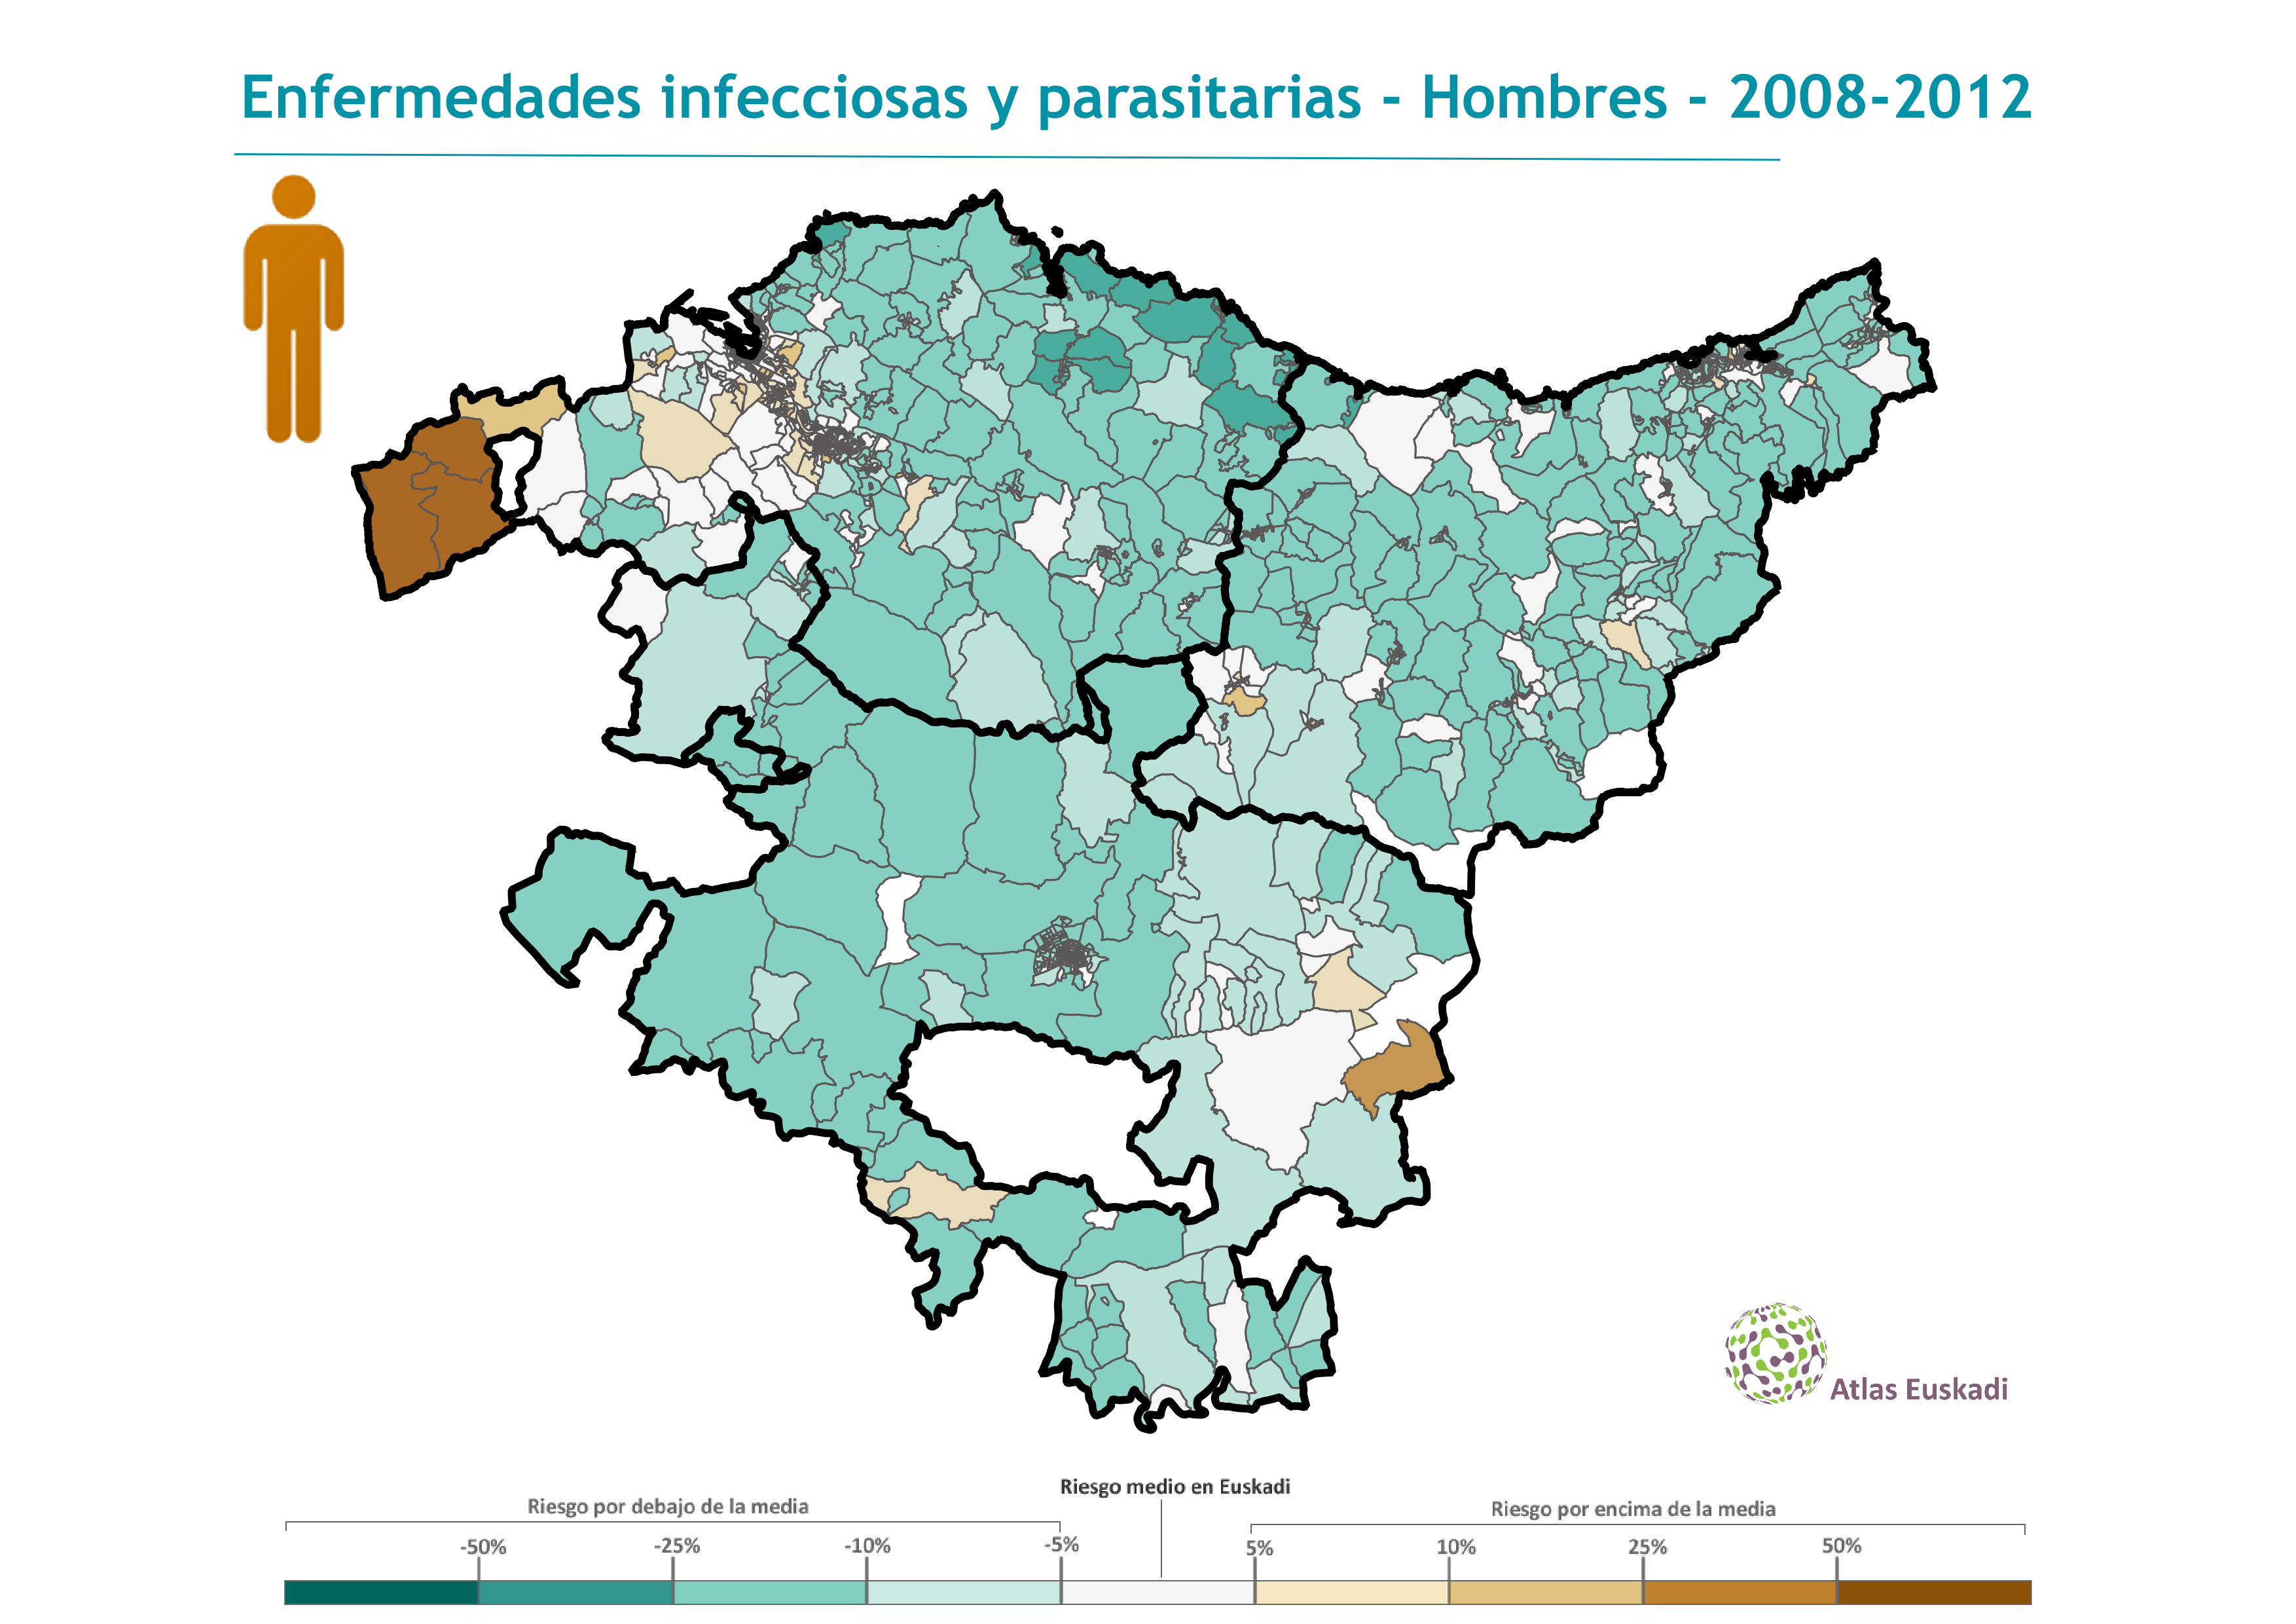 Enfermedades infecciosas y parasitarias hombres  2008-2012 Euskadi